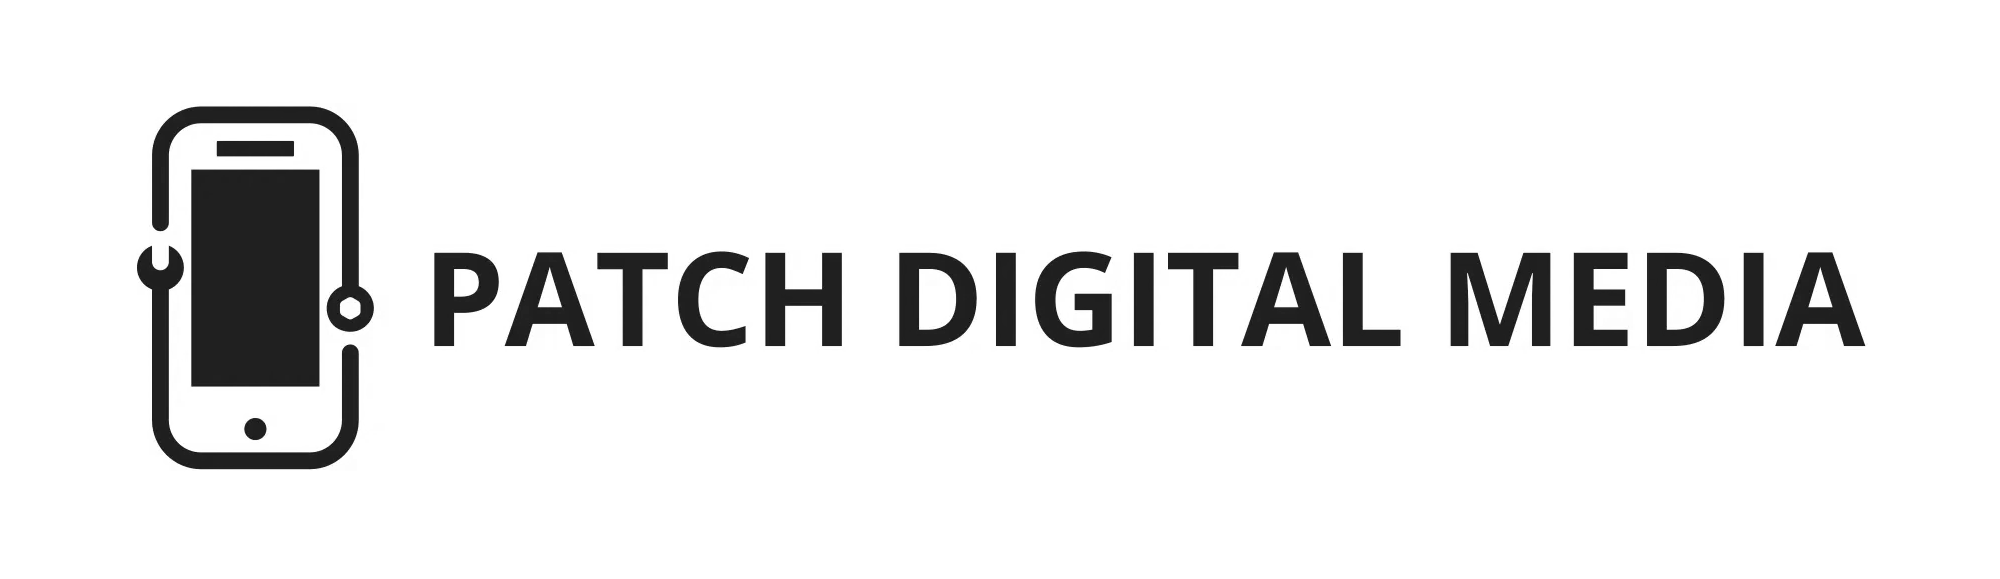 PDM logo blk horiz tr